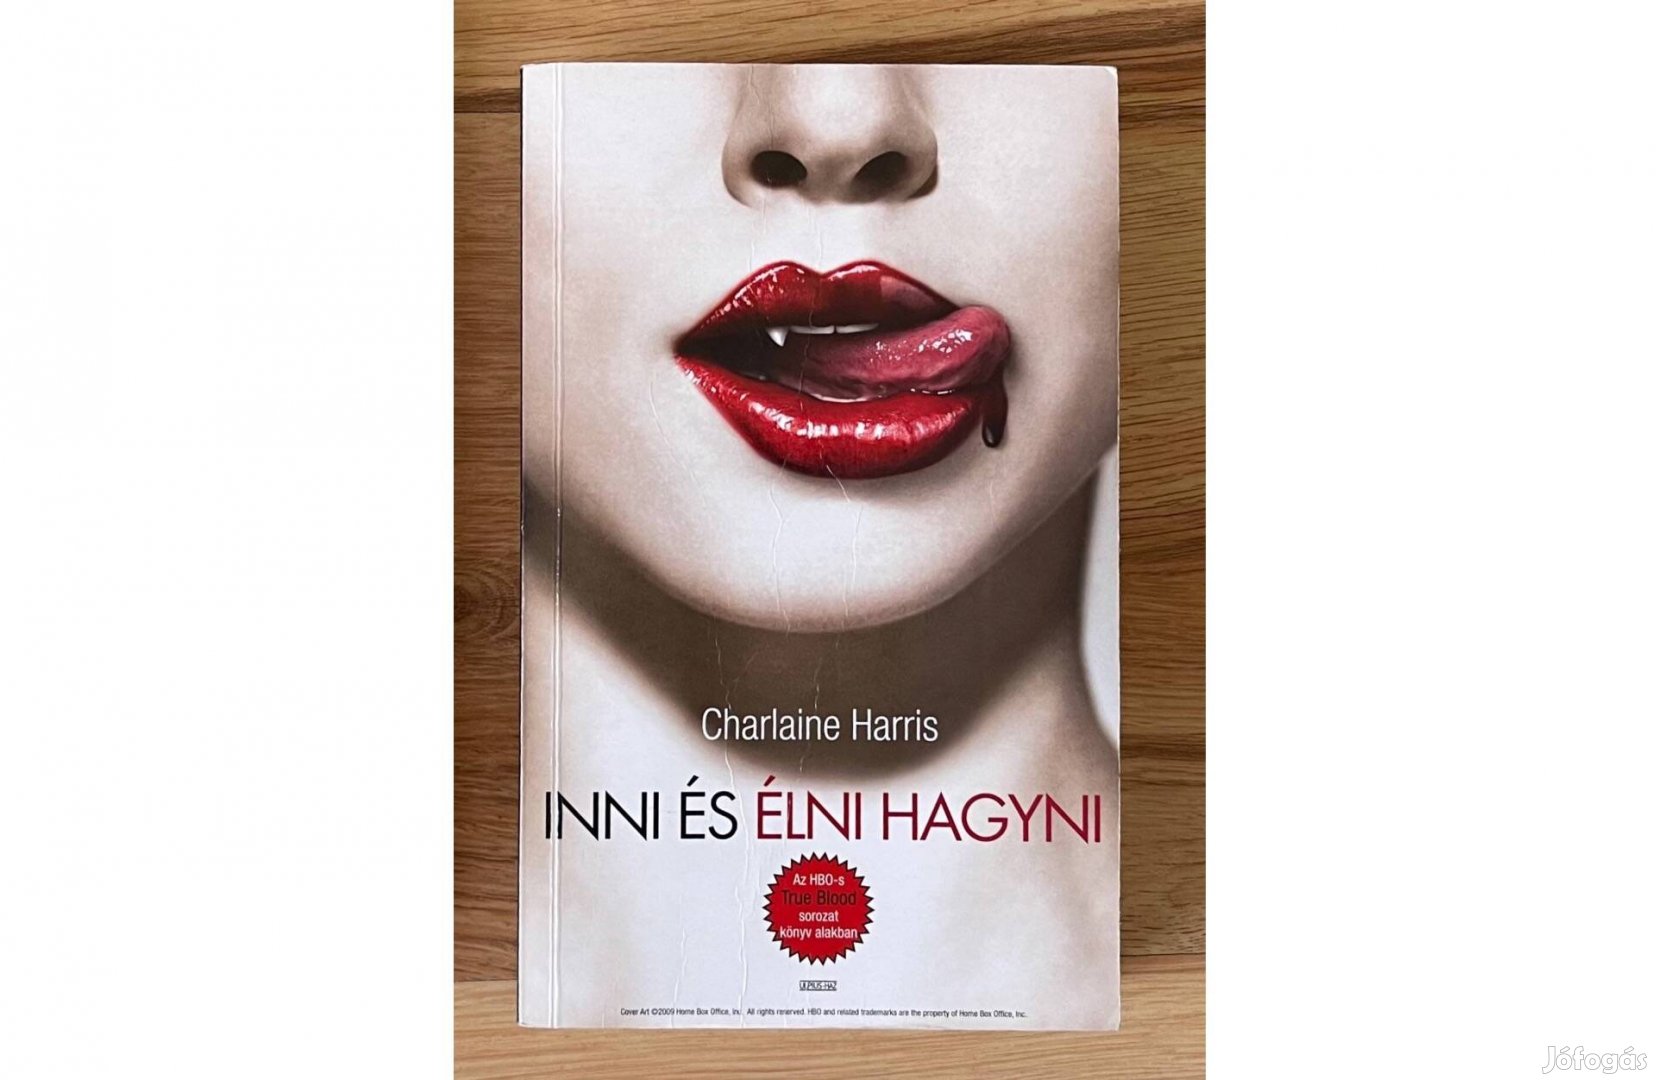 Charlaine Harris - Inni és élni hagyni (True Blood)